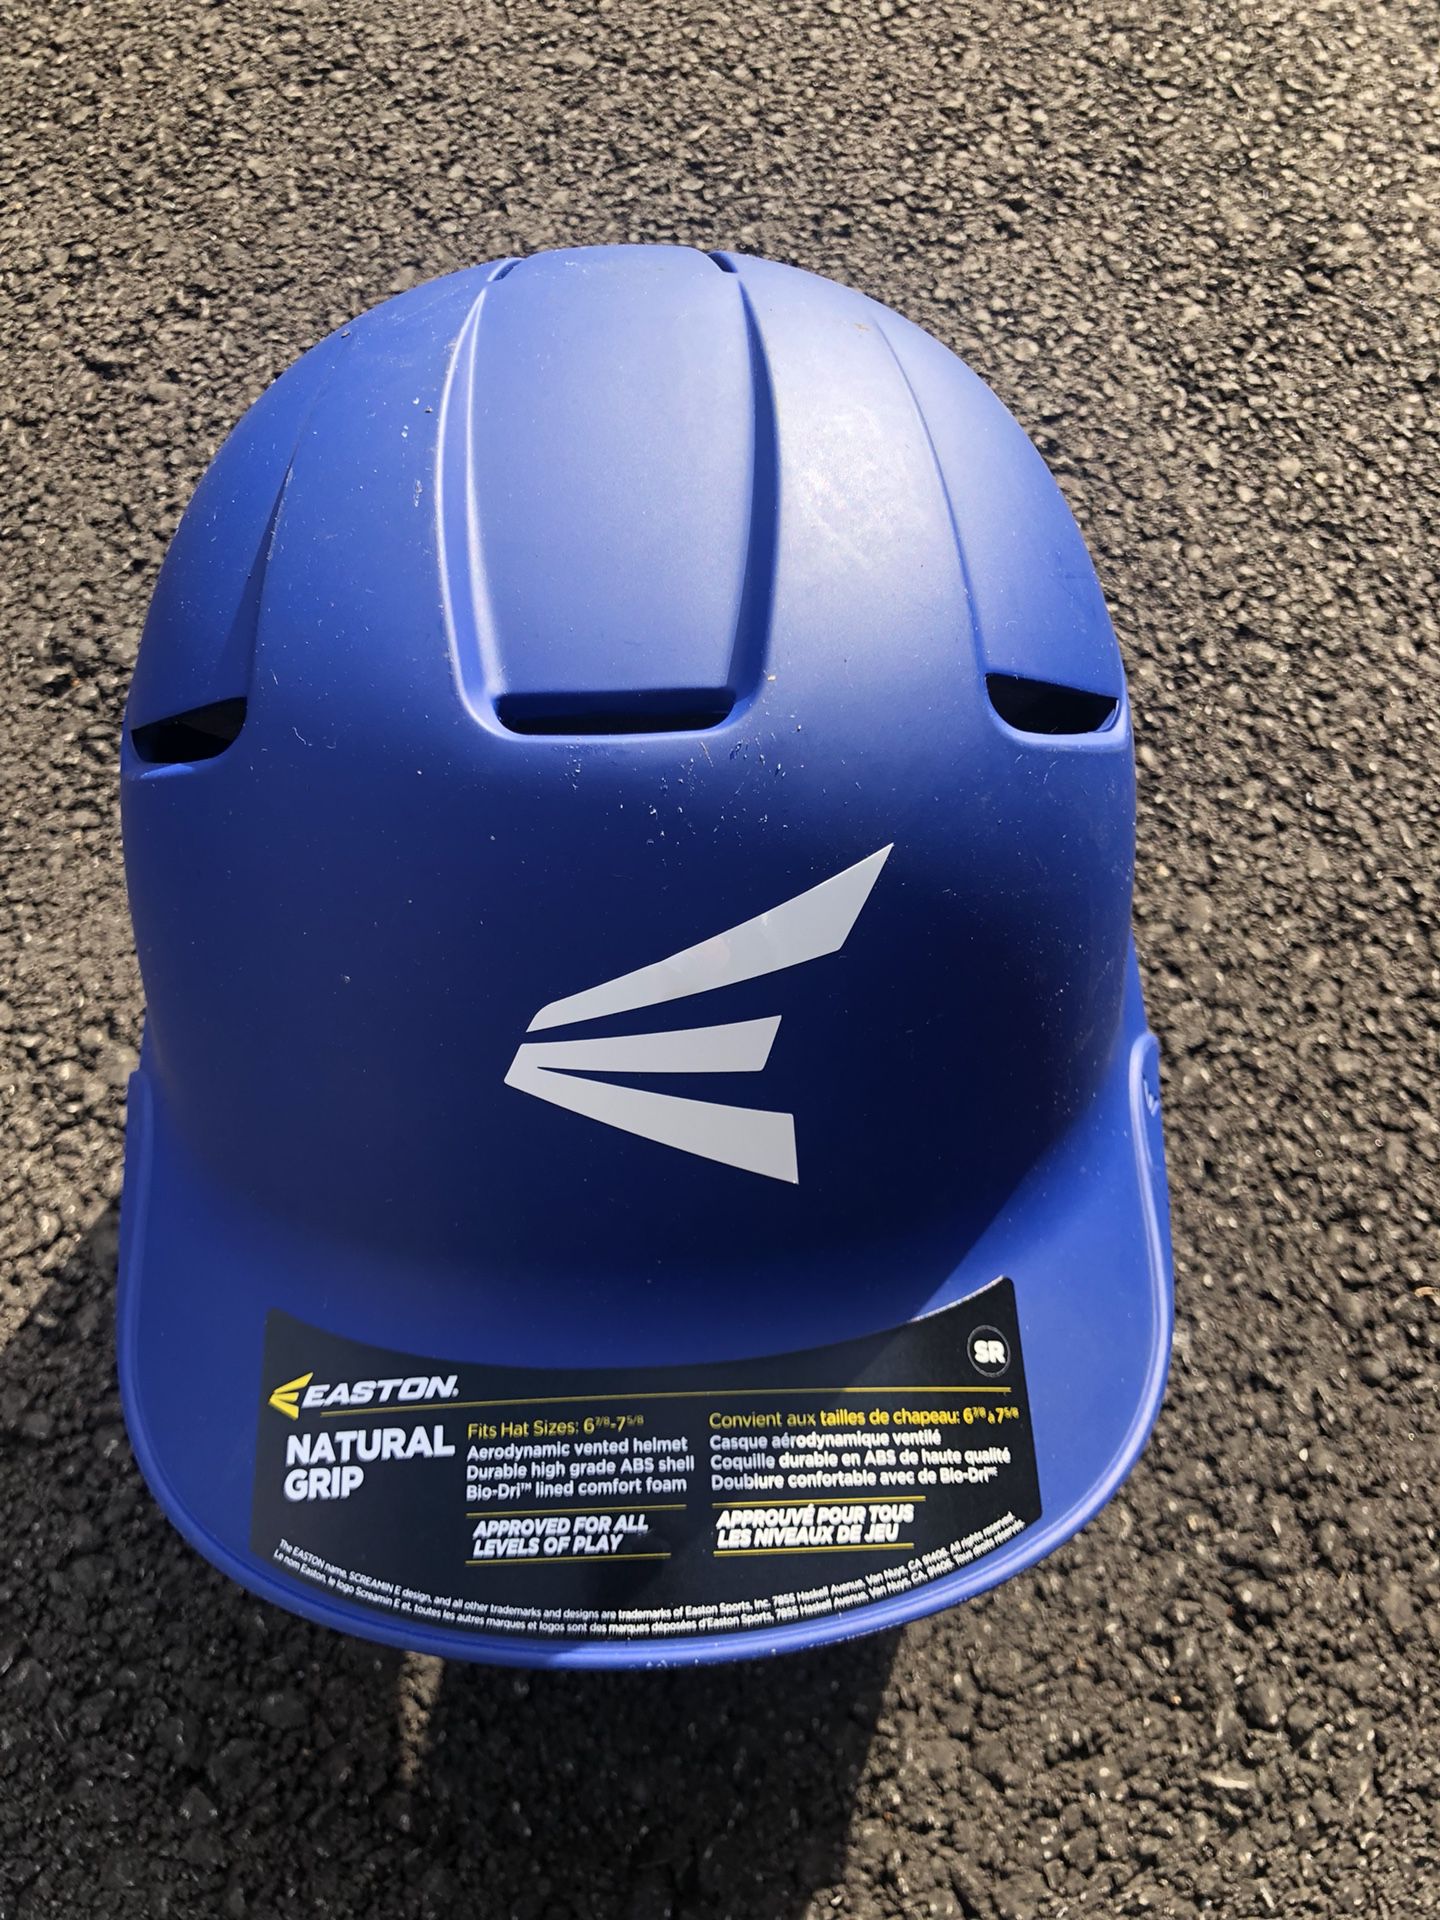 Baseball Batting Helmet $15